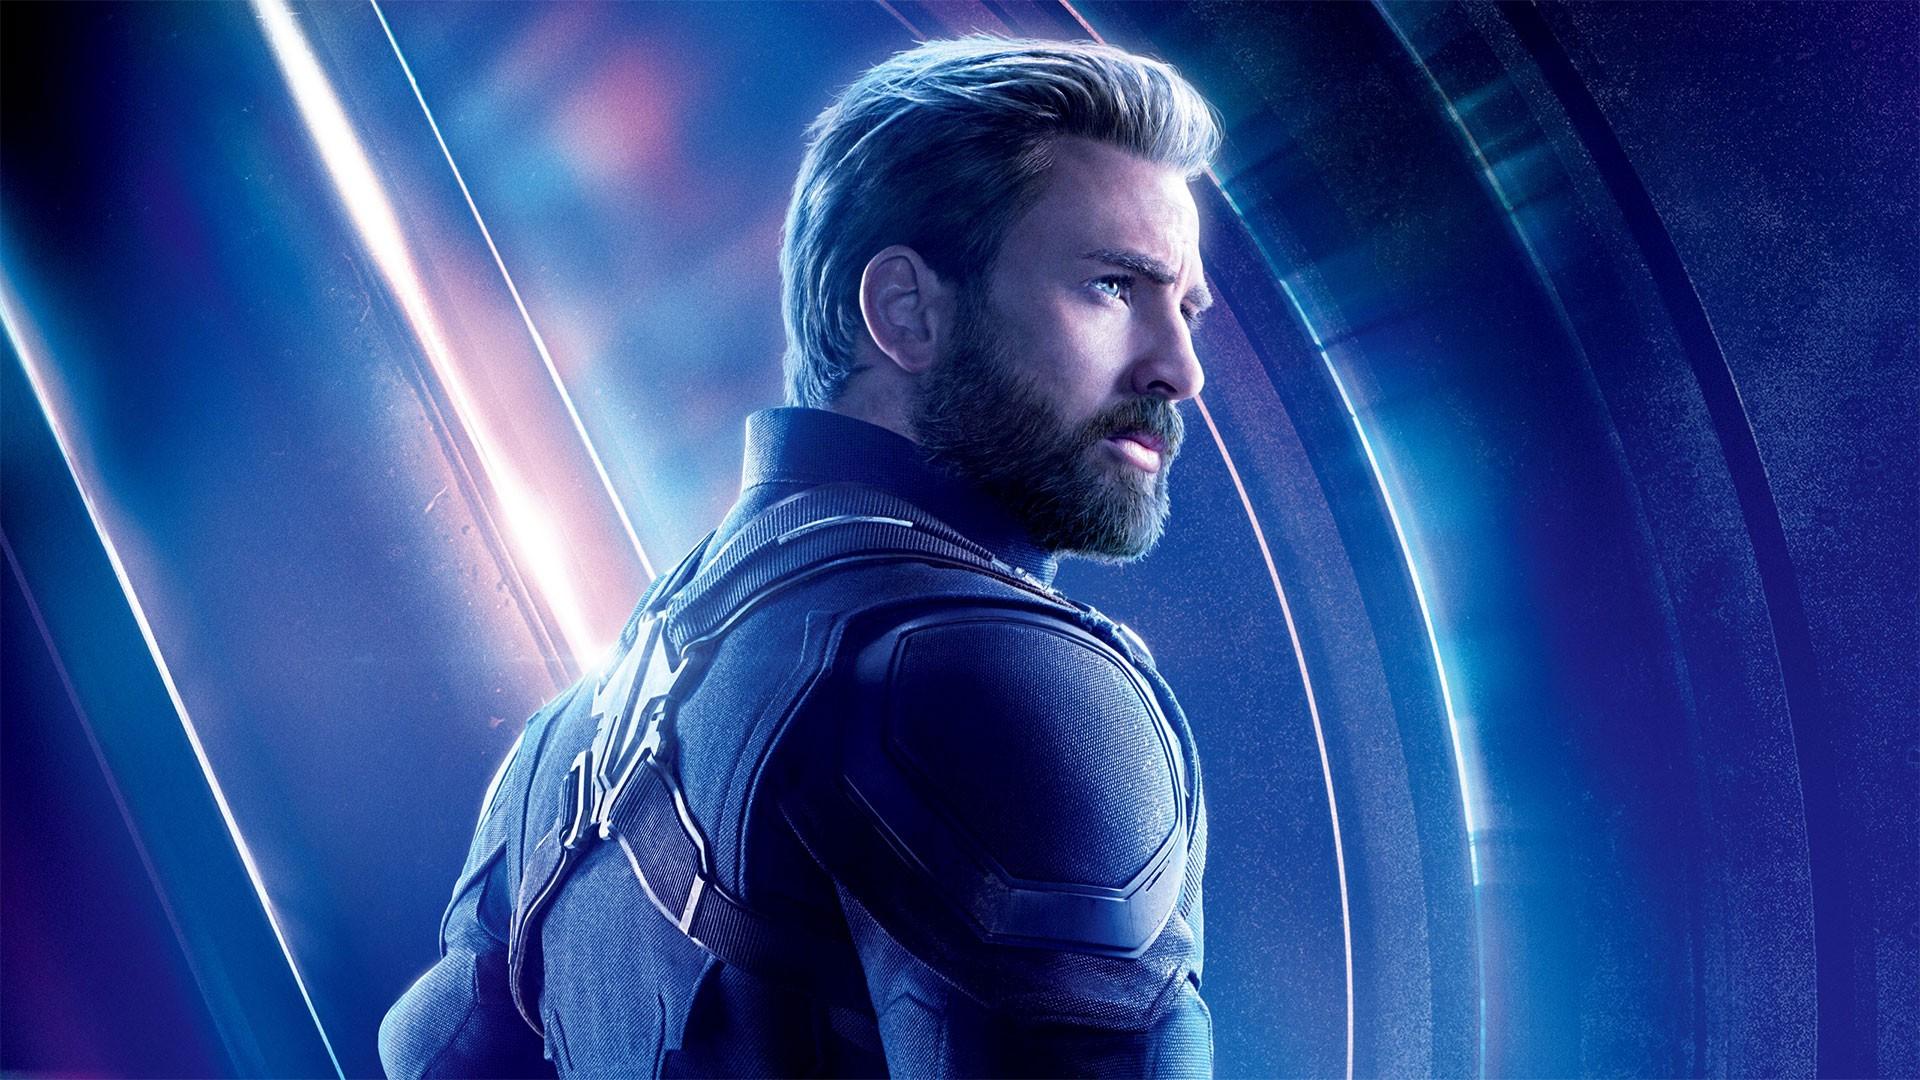 Chris Evans Captain America Avengers Endgame Wallpaper